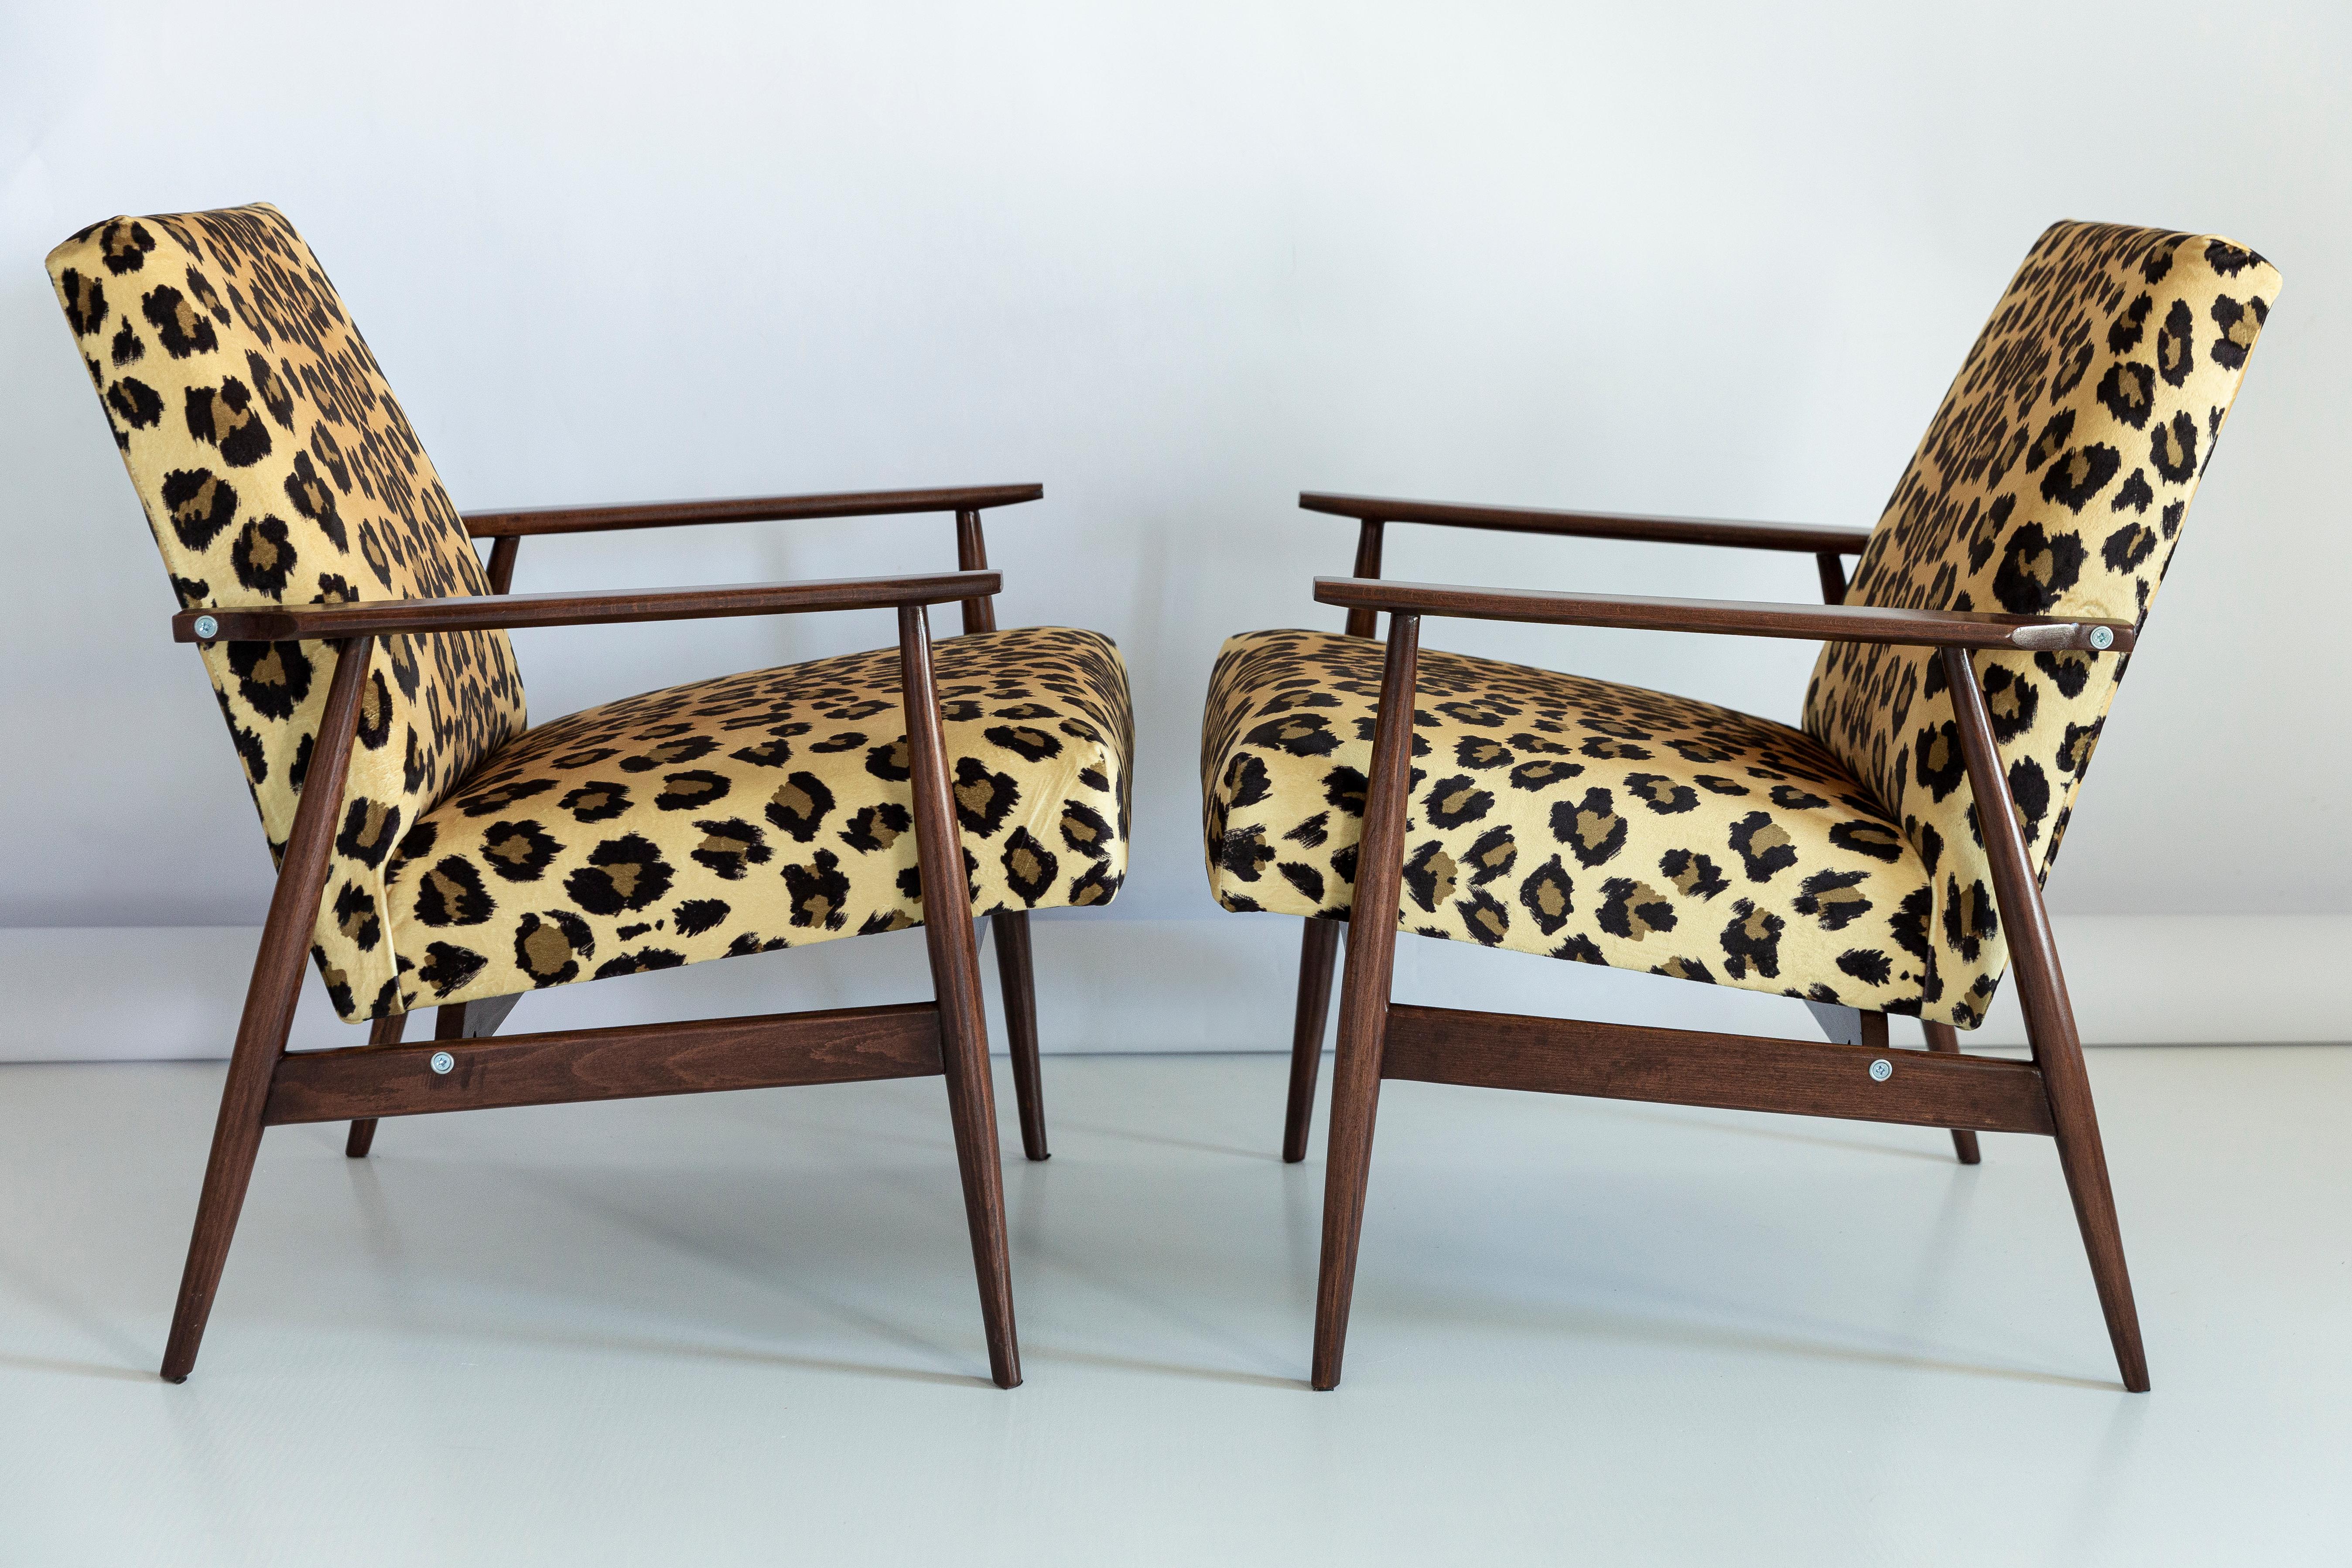 Ensemble de quatre beaux fauteuils restaurés conçus par Henryk Lis. Meubles après une rénovation complète de la menuiserie et de la tapisserie. Le tissu, qui recouvre un dossier et une assise, est un revêtement en velours italien de haute qualité